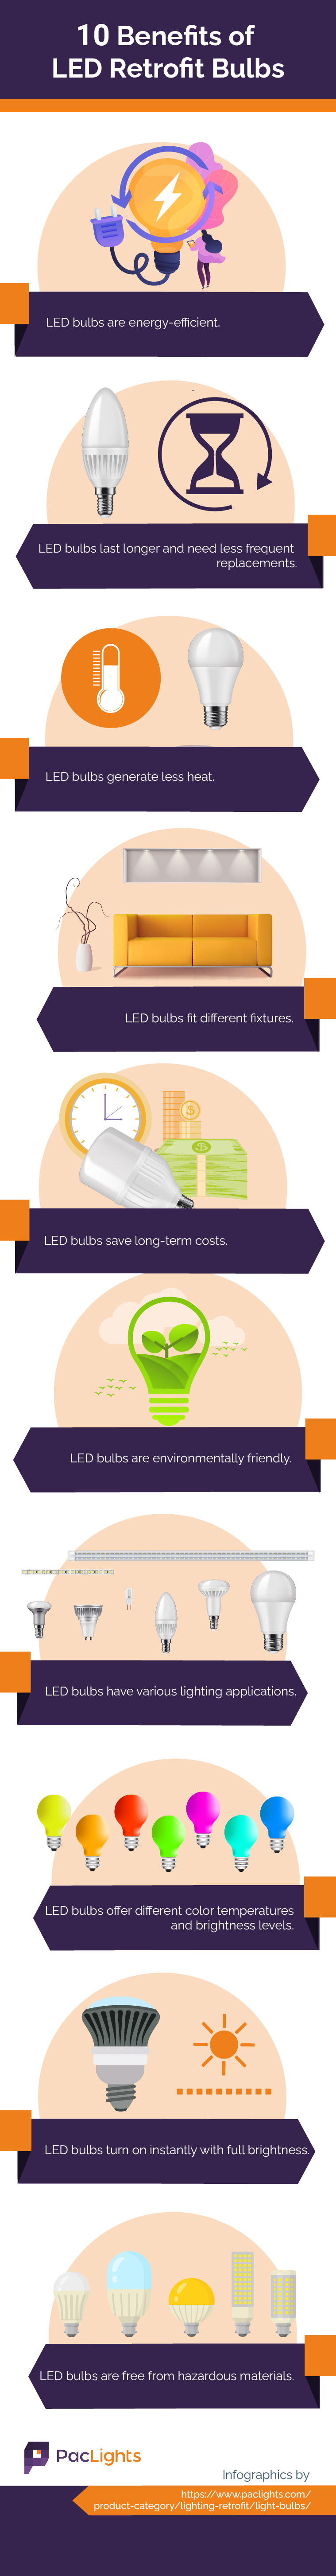 Benefits of LED Retrofit Bulbs